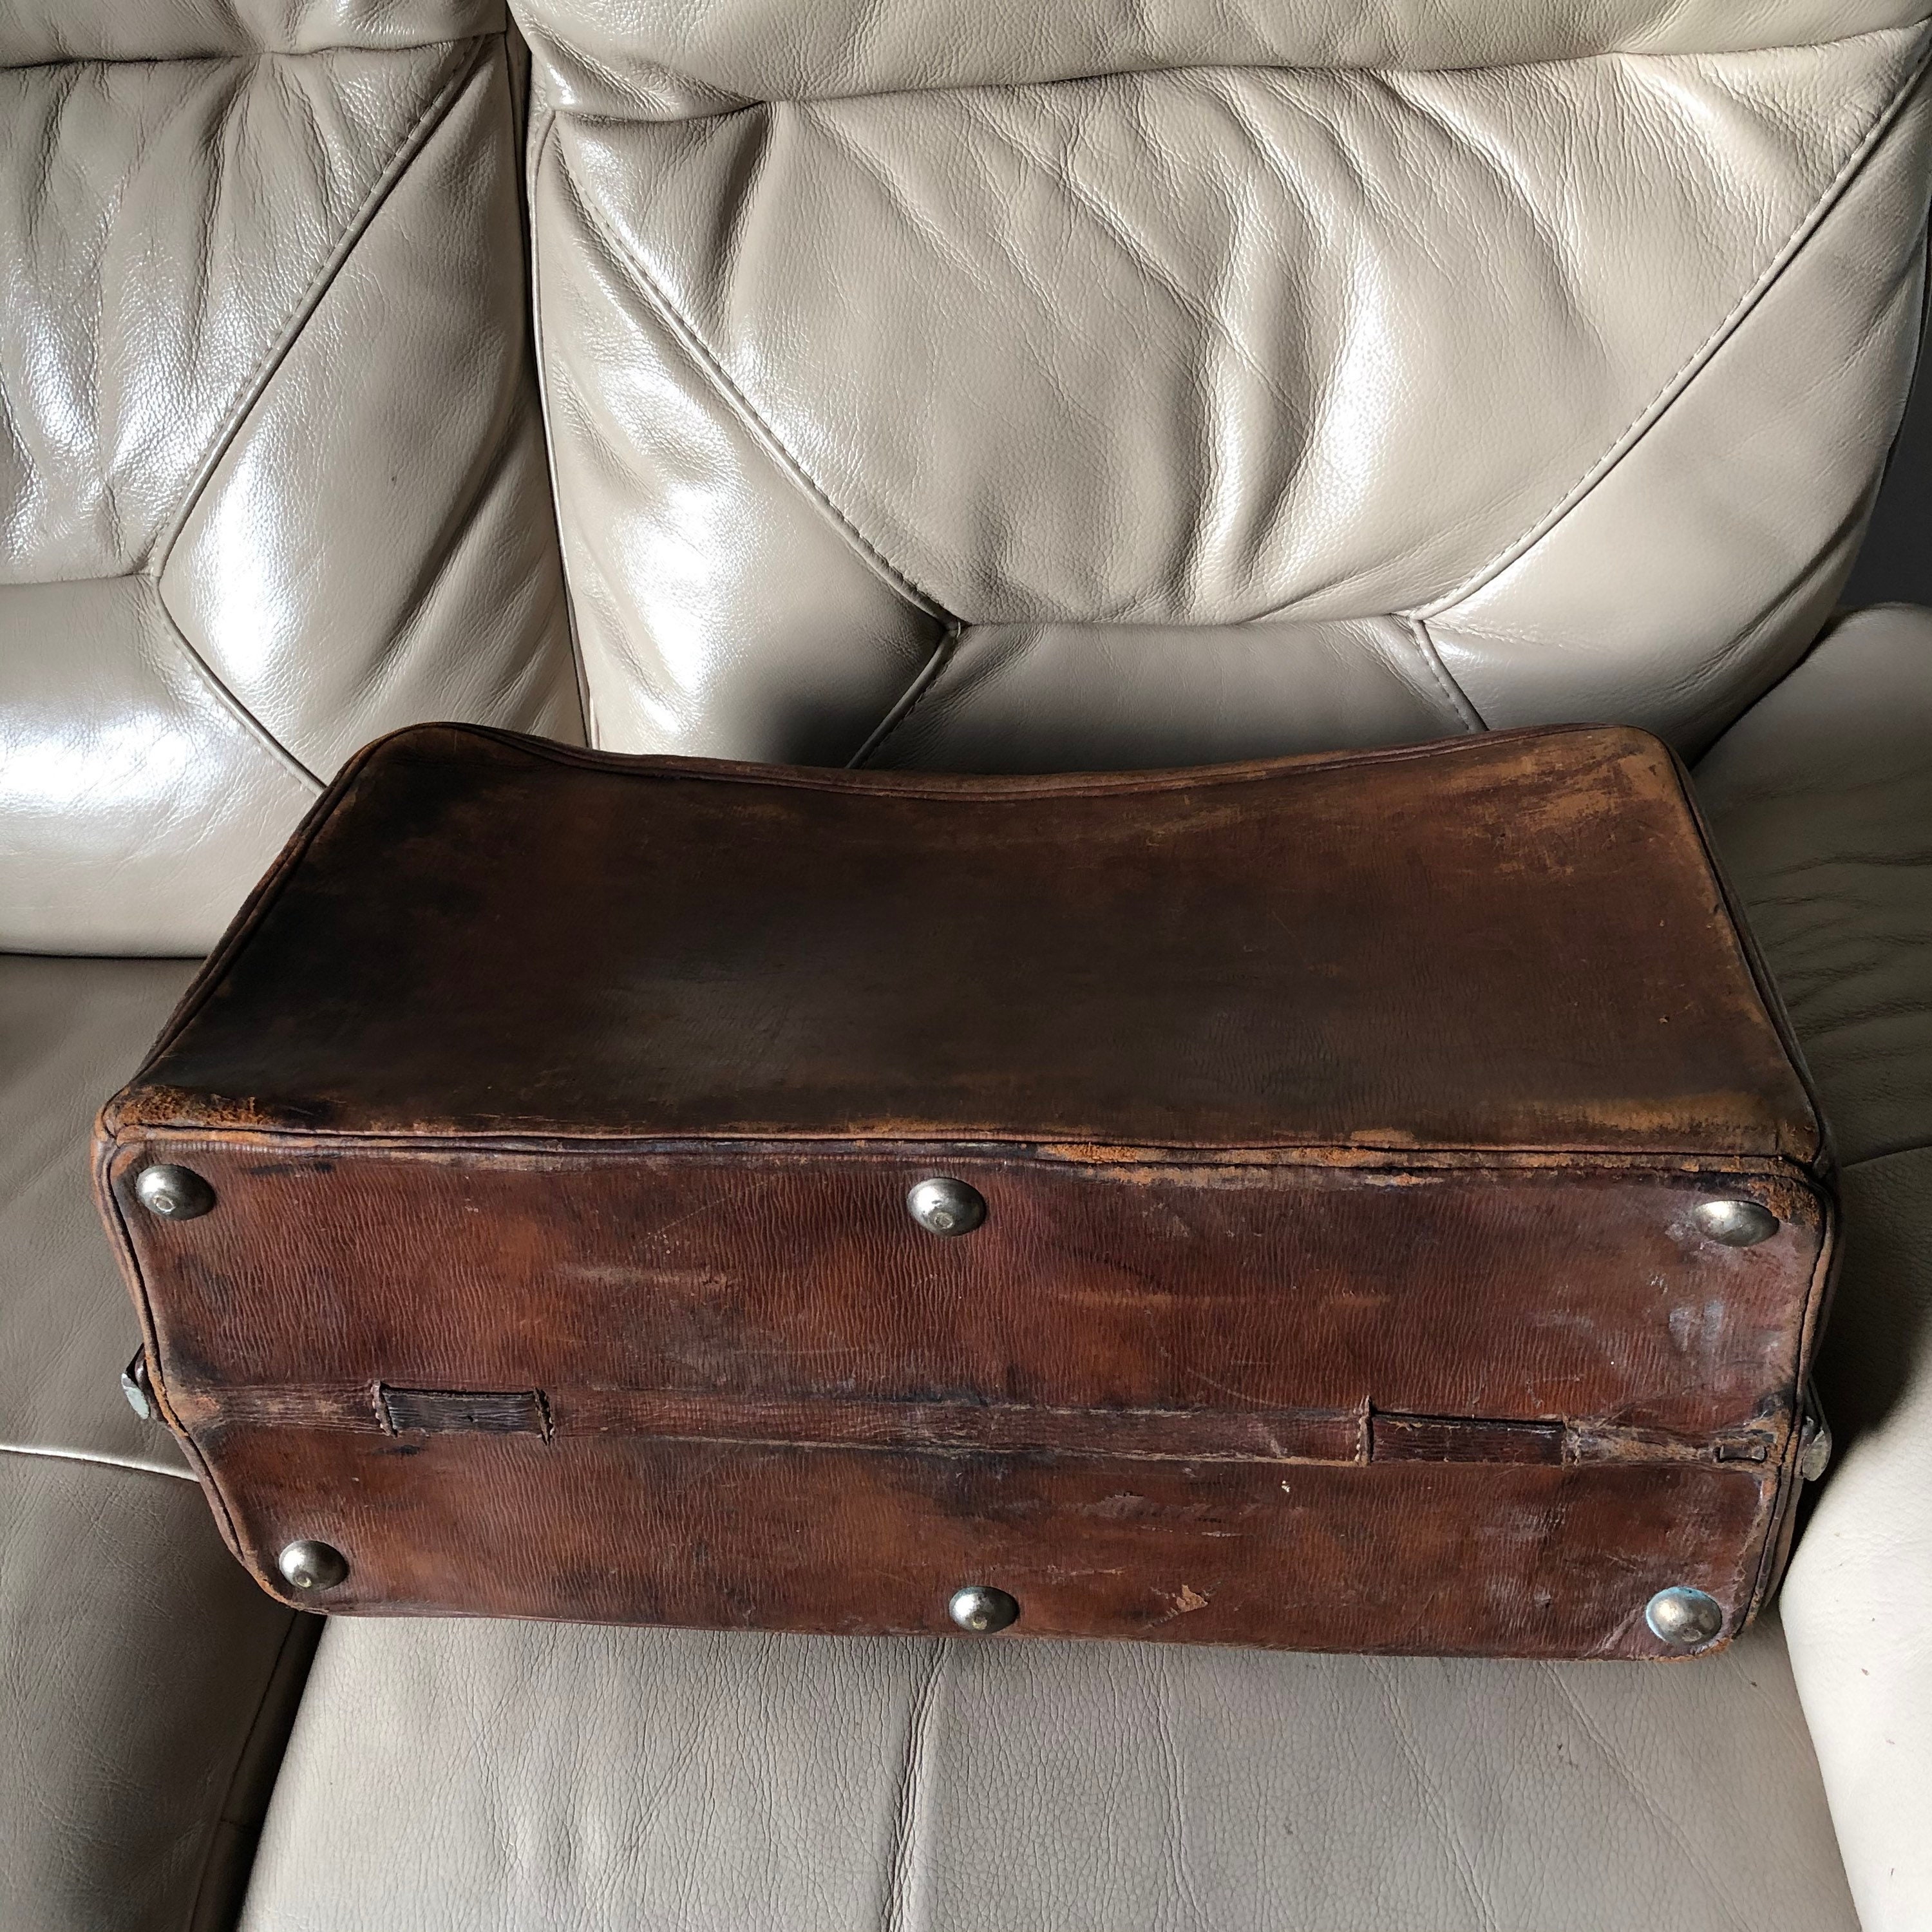 Gladstone Bag Antique Bag Victorian Case Edwardian Travel Bag | Etsy